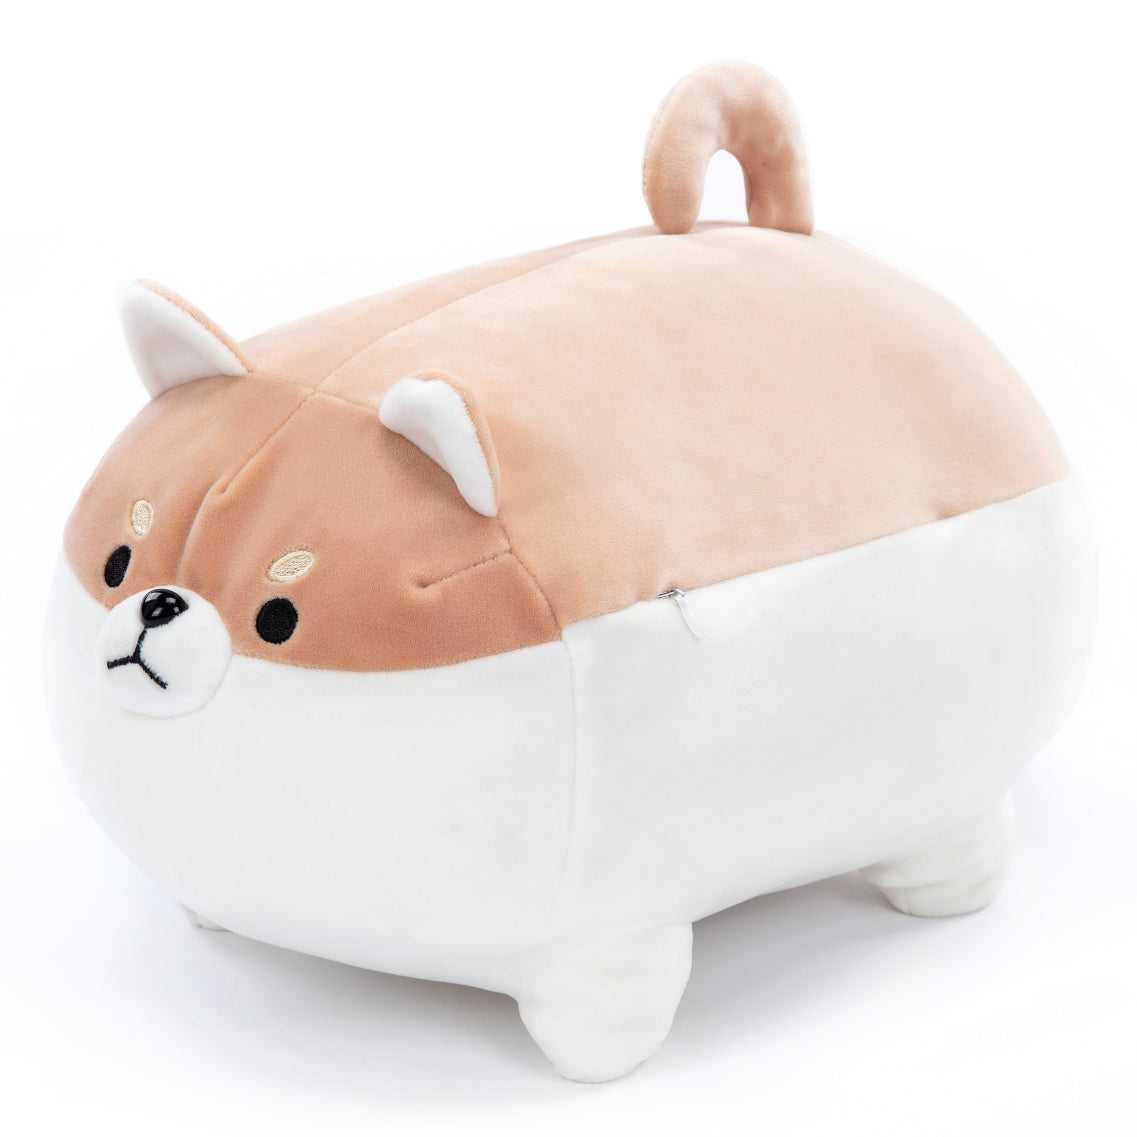 Shiba Inu Akita Stuffed Animal Toy, 16 Inches